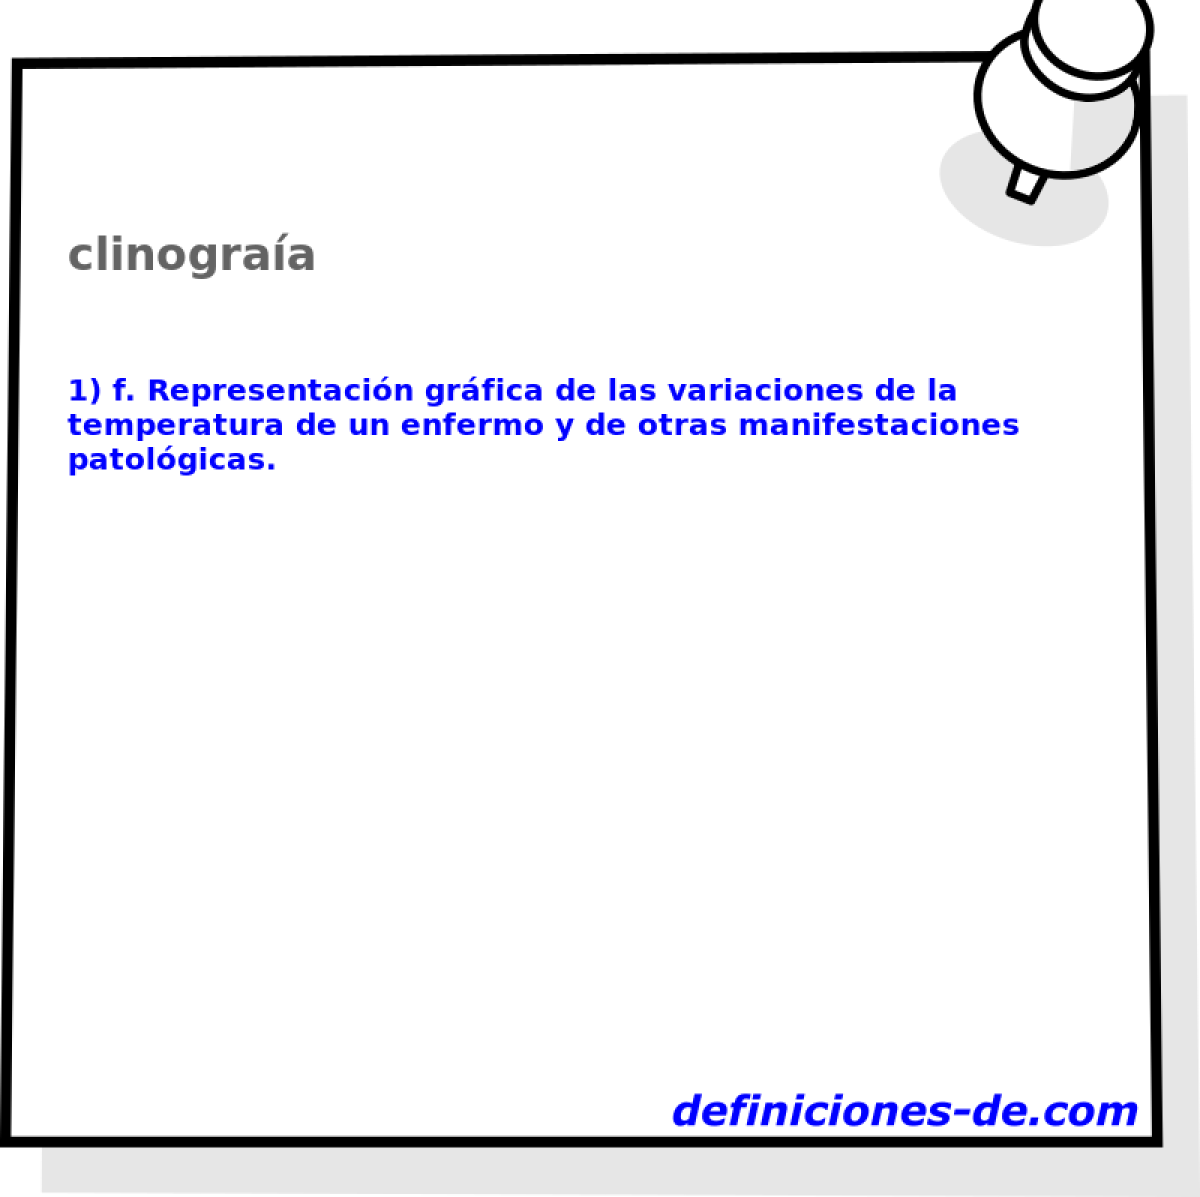 clinograa 